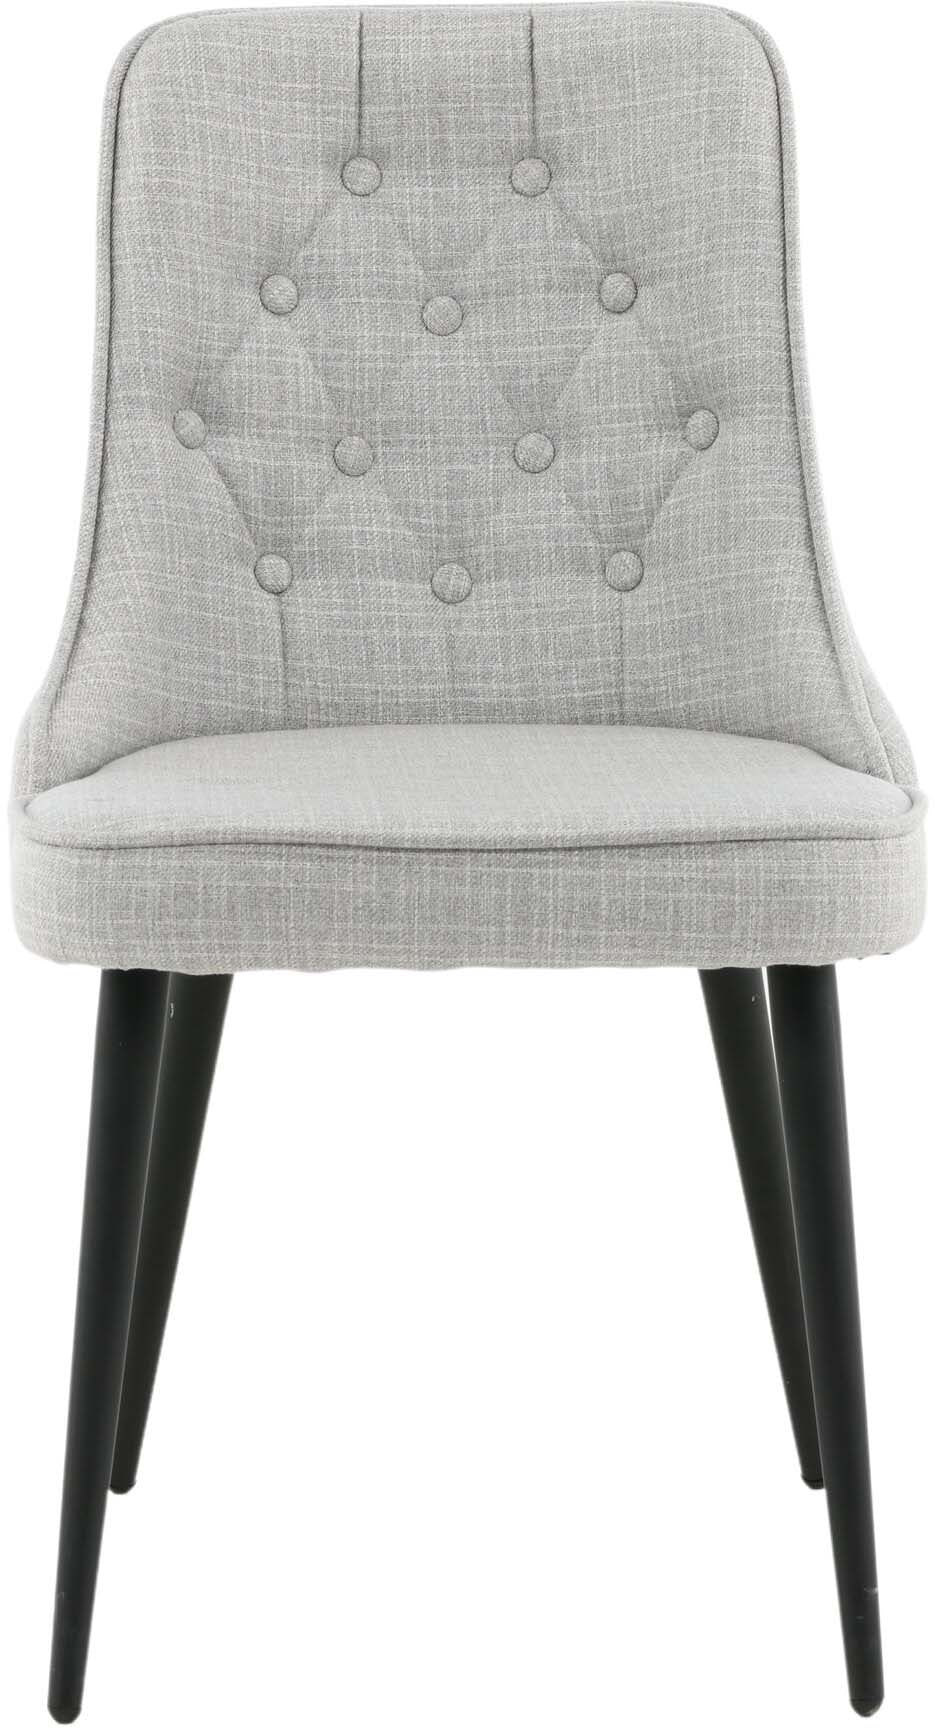 Velvet Deluxe Stuhl in Grau / Schwarz präsentiert im Onlineshop von KAQTU Design AG. Stuhl ist von Venture Home